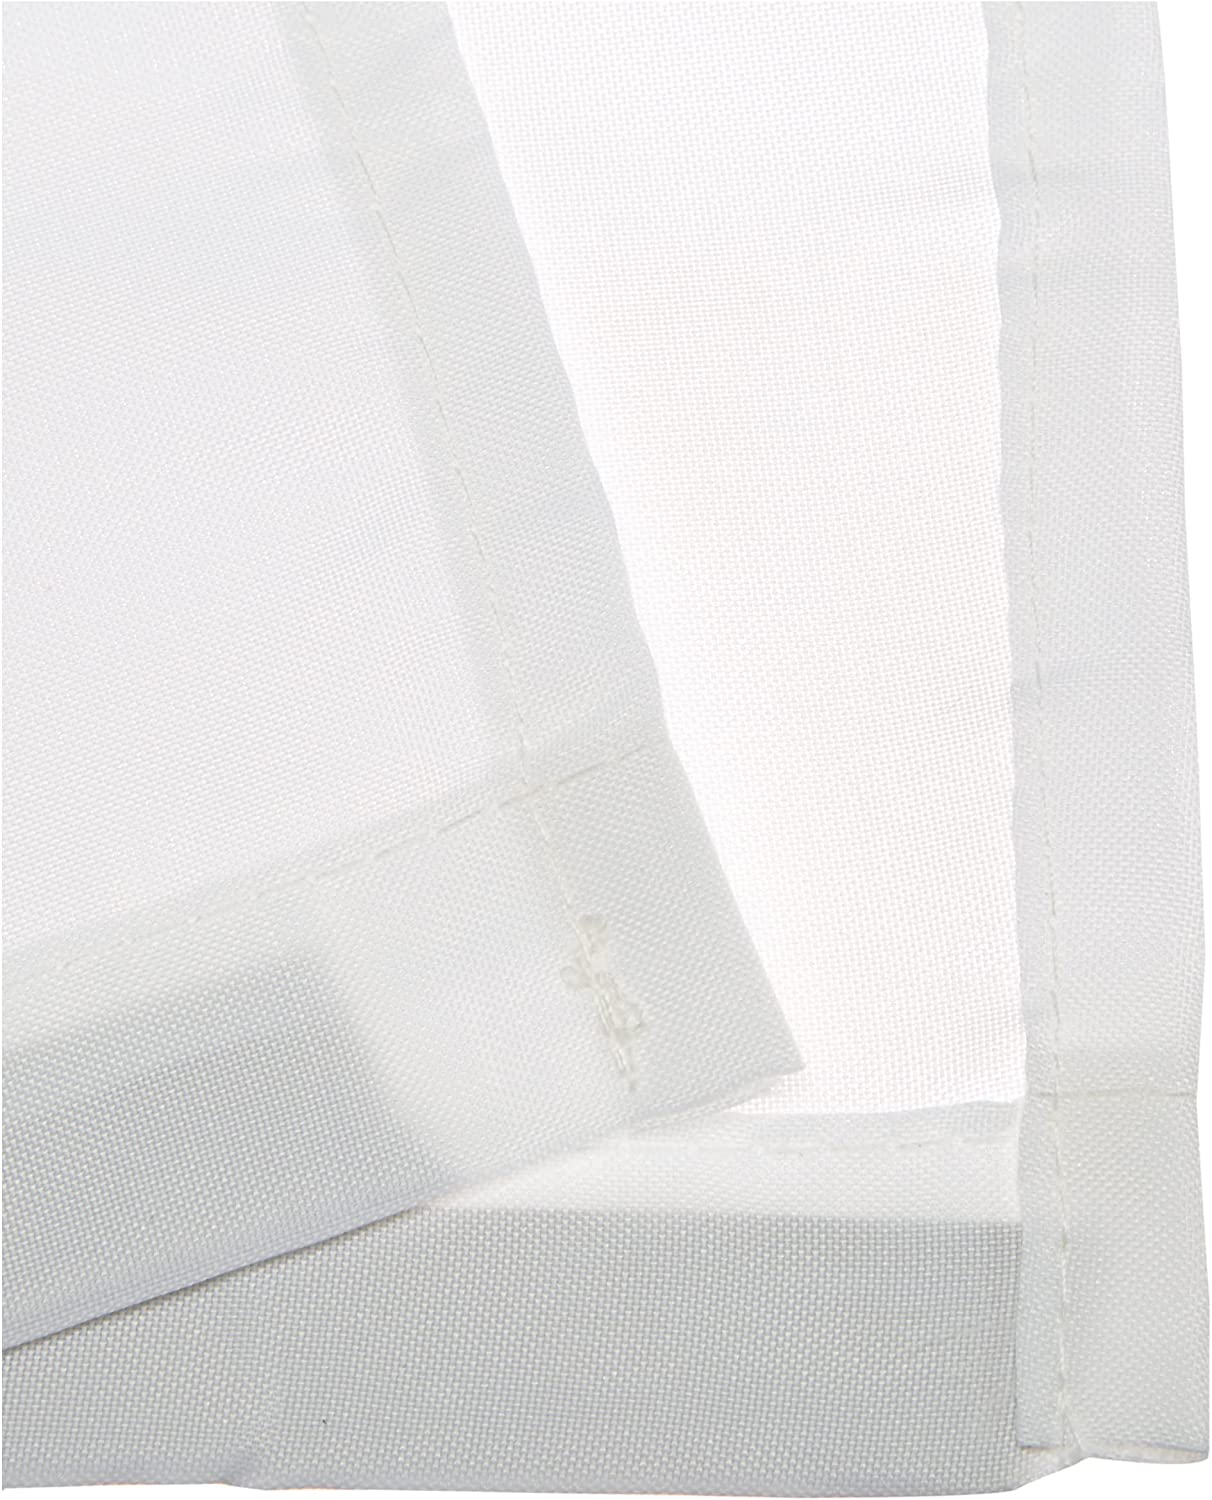 Duschvorhang Madeira, Textil, Farbe: Weiß, B x H: 120 x 200 cm